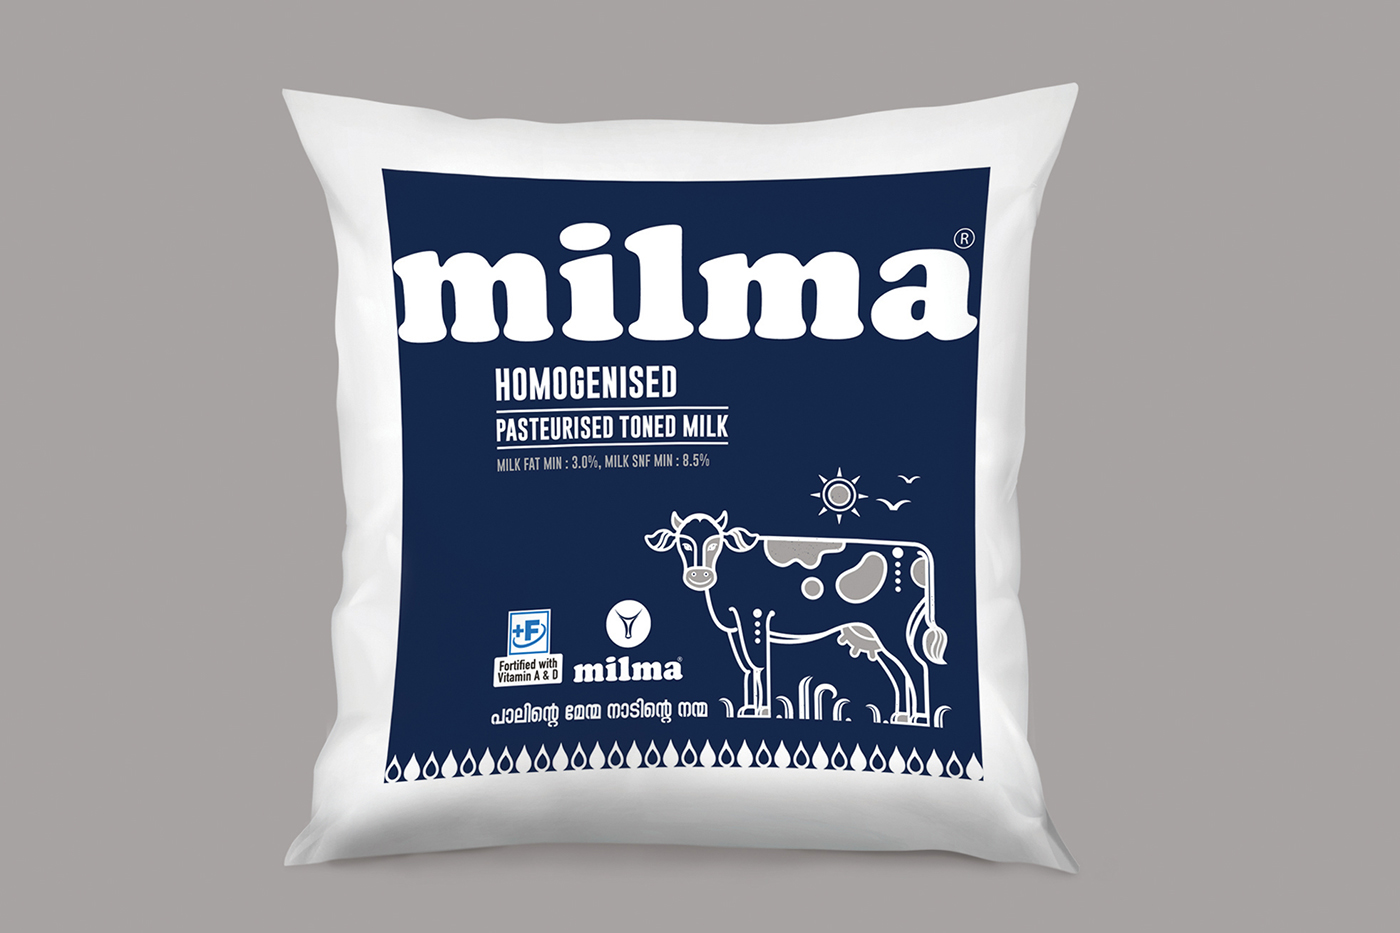 Milma Homogenised Pasteurised Toned Milk